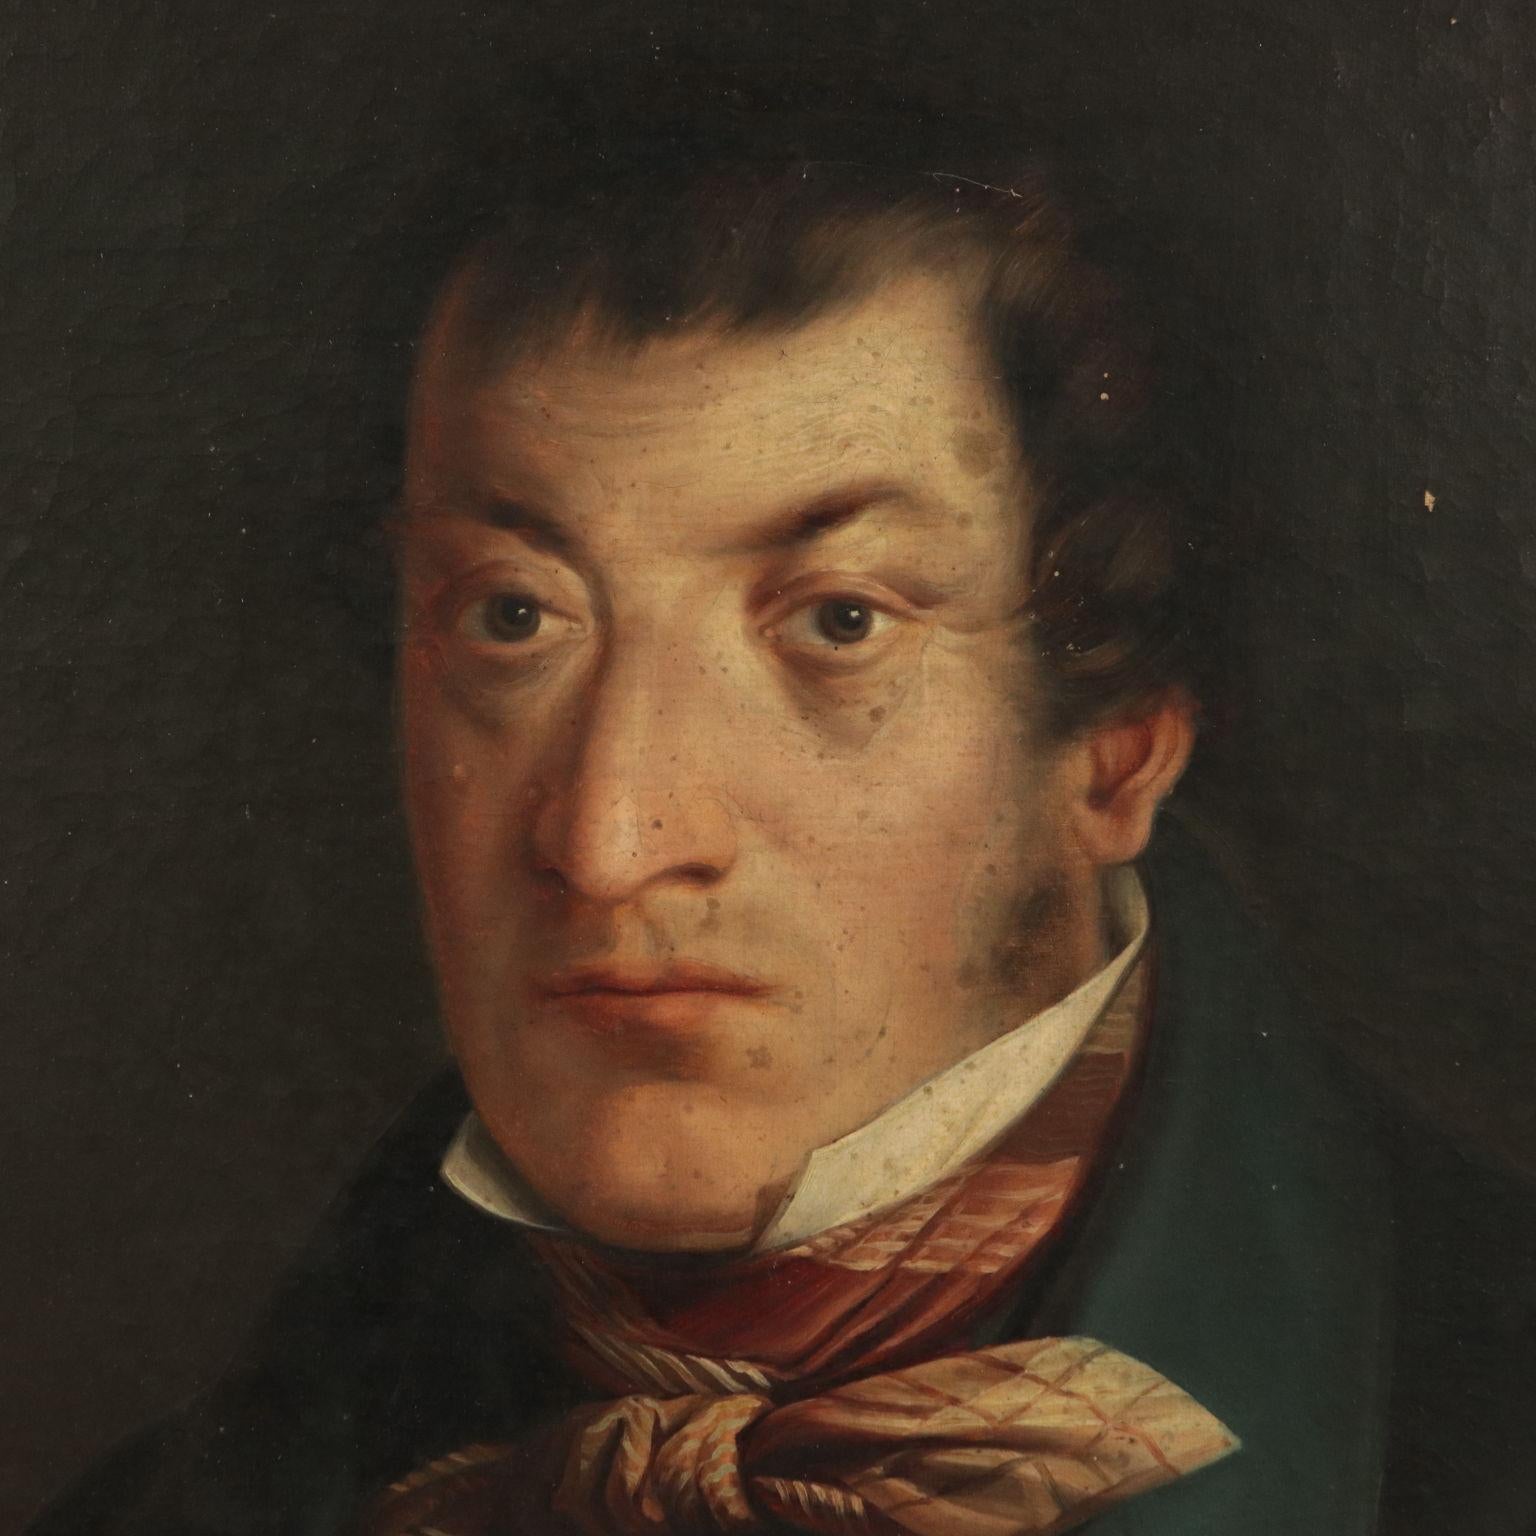 1800s man portrait